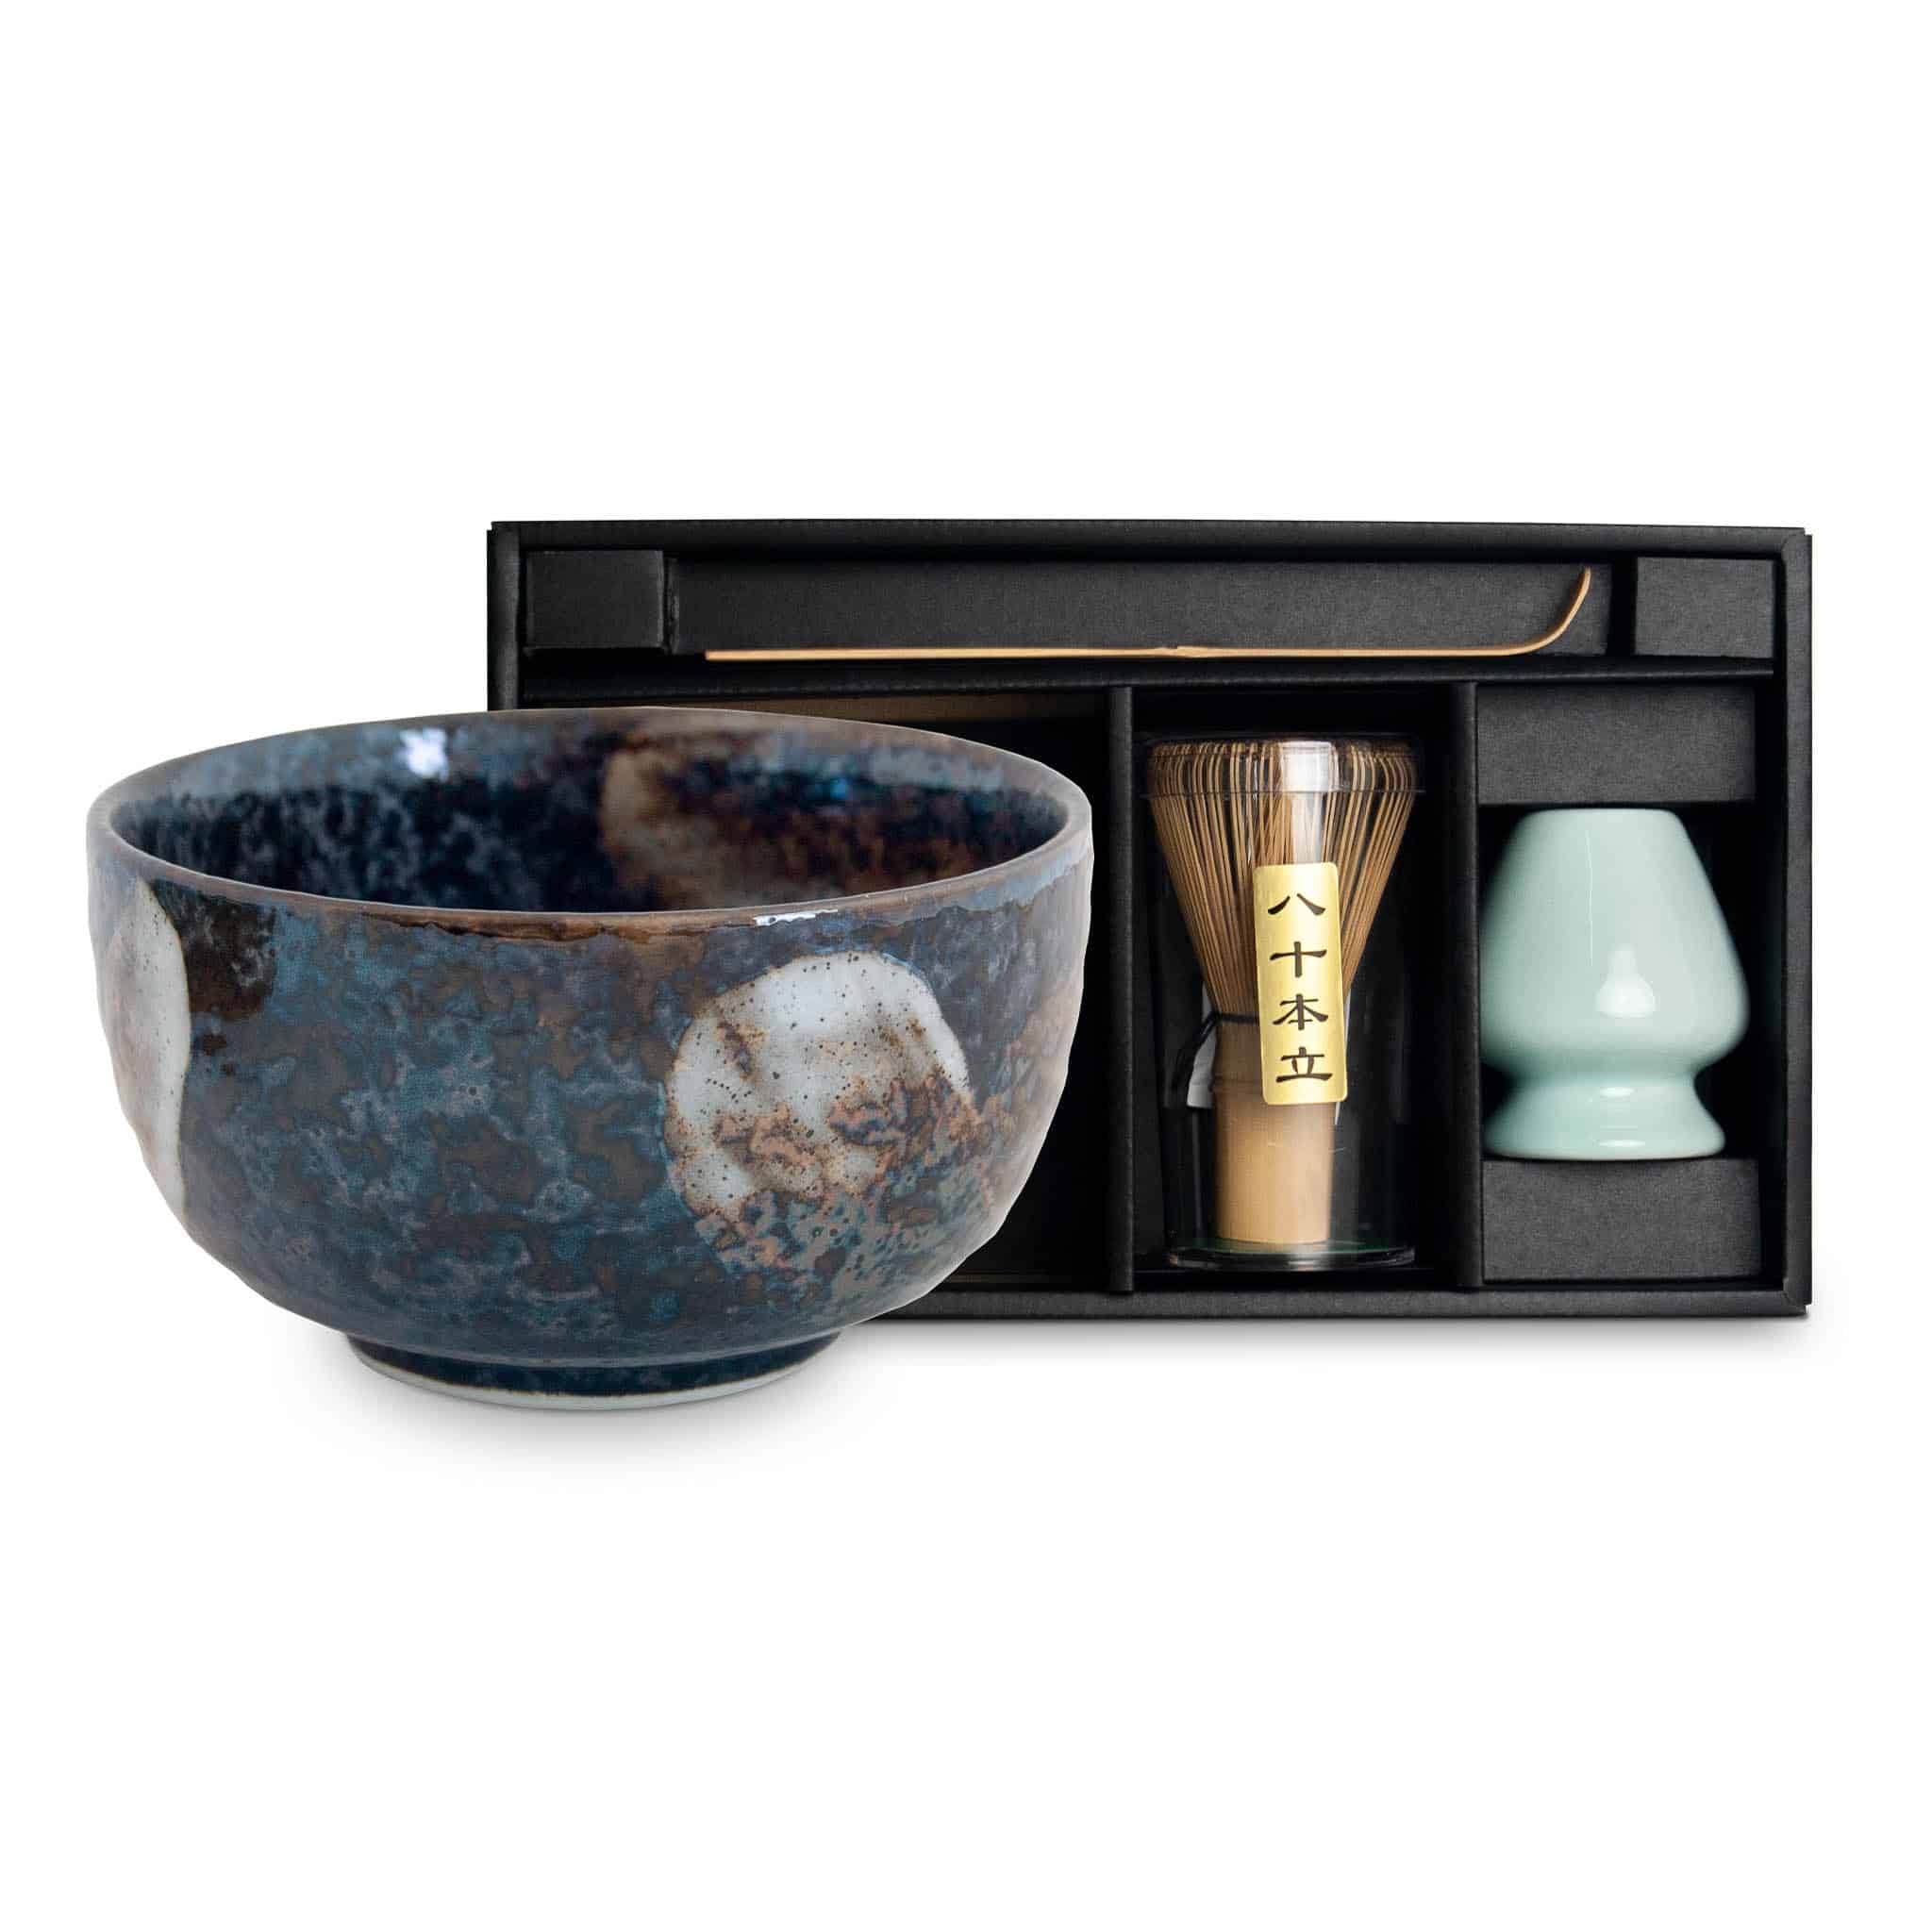 Tealyra - Matcha - Start Up Kit - Matcha Green Tea Gift Set - Japanese Made  Bowl - Bamboo Whisk and Scoop - Gift Box (Green)